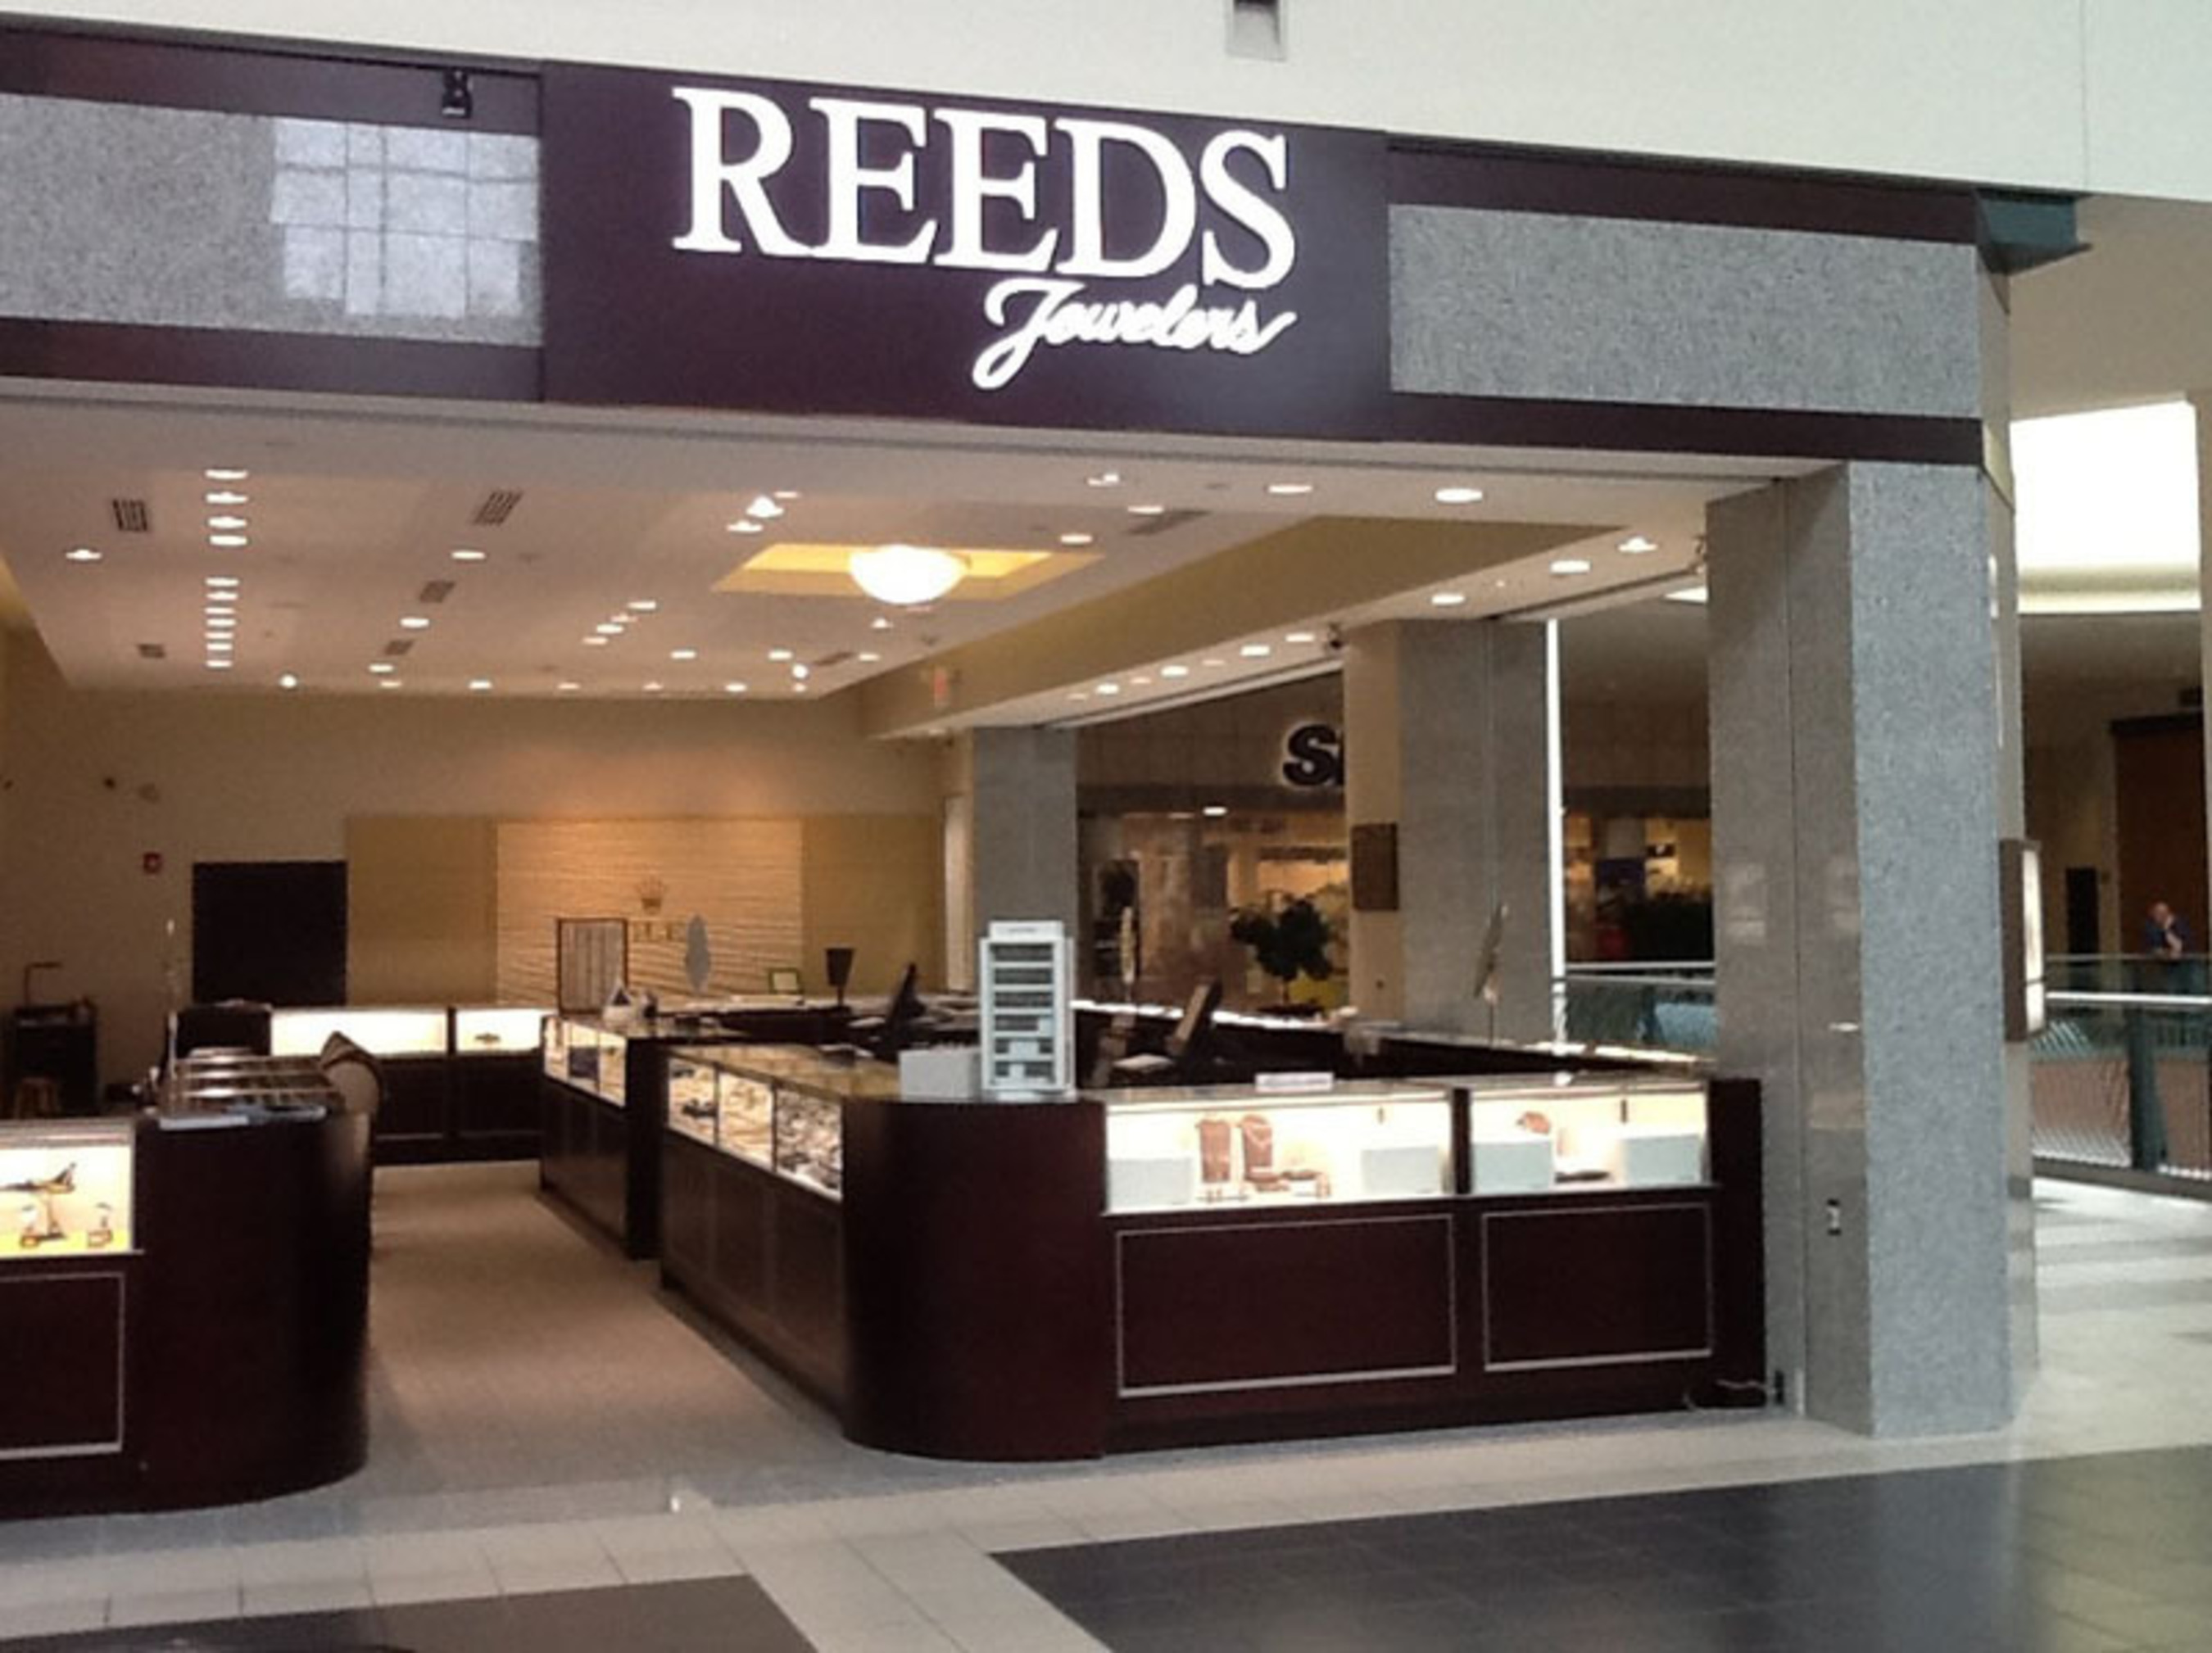 Reeds Jewelers. (PRNewsFoto/REEDS Jewelers) (PRNewsFoto/REEDS JEWELERS)